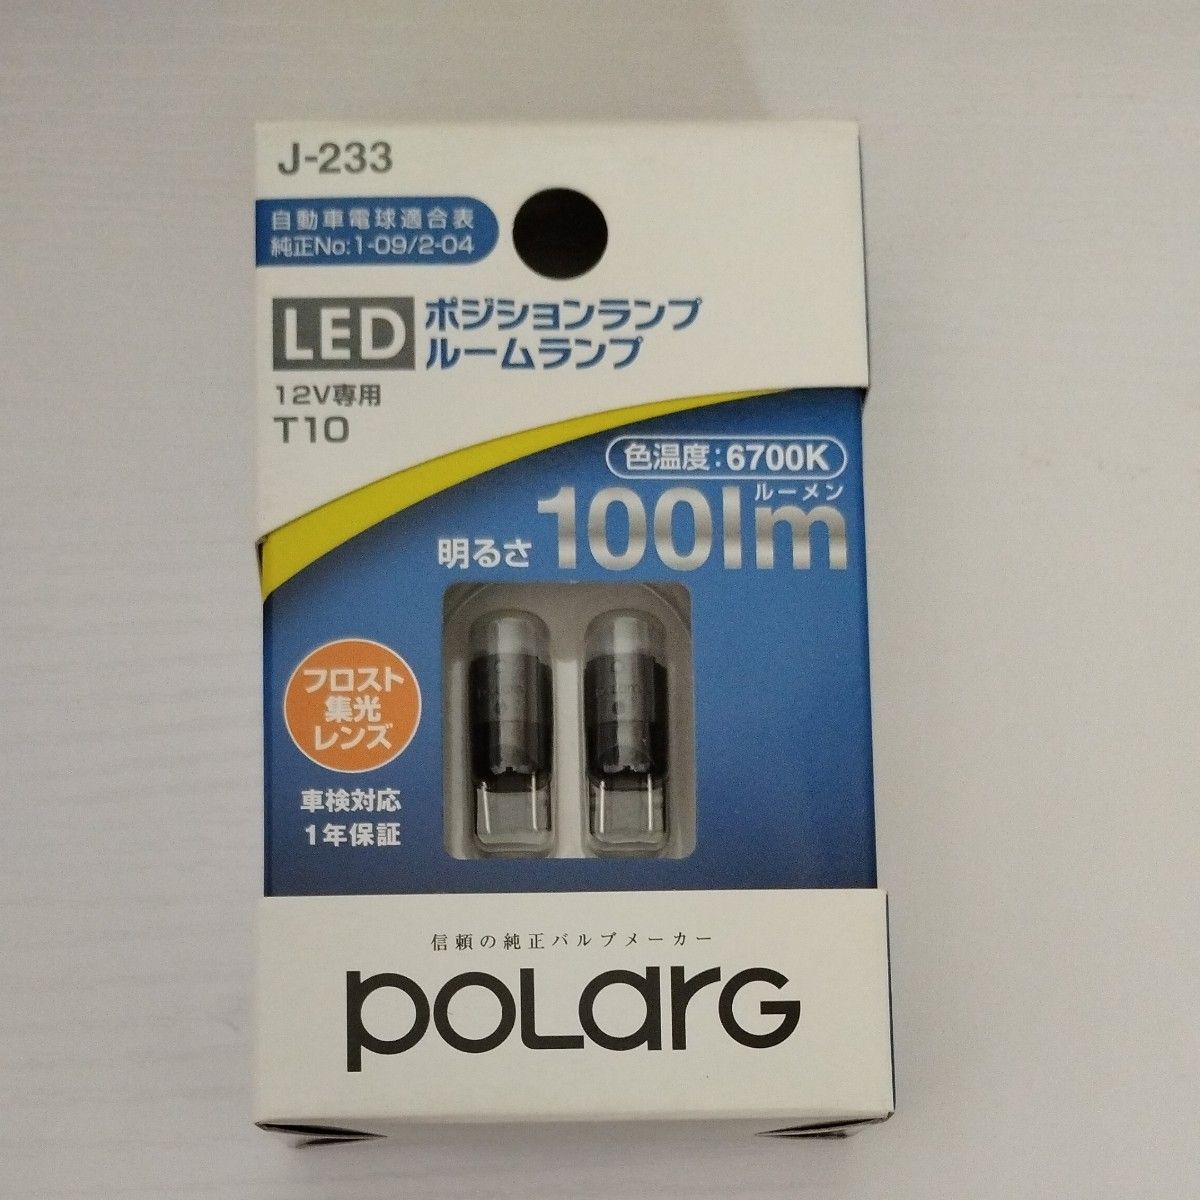 【新品未開封】 日星工業 POLARG(ポラーグ) J-233 LED ポジションランプ ルームランプ 12V専用